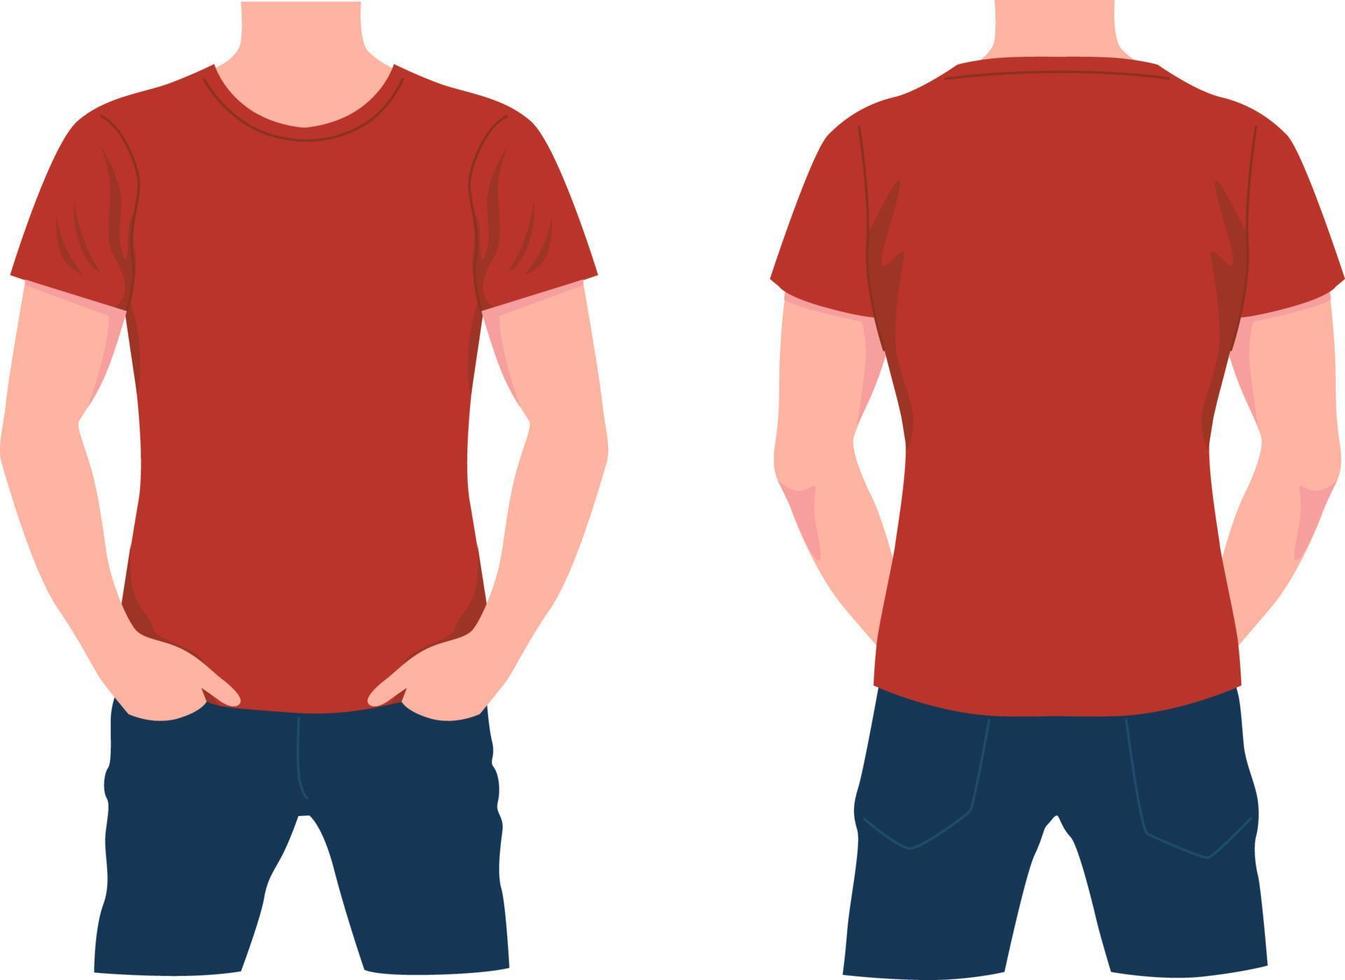 homem de camiseta vermelha e jeans azul. elegantemente personagem com vista frontal e traseira vestida em estilo moderno e moderno. vetor